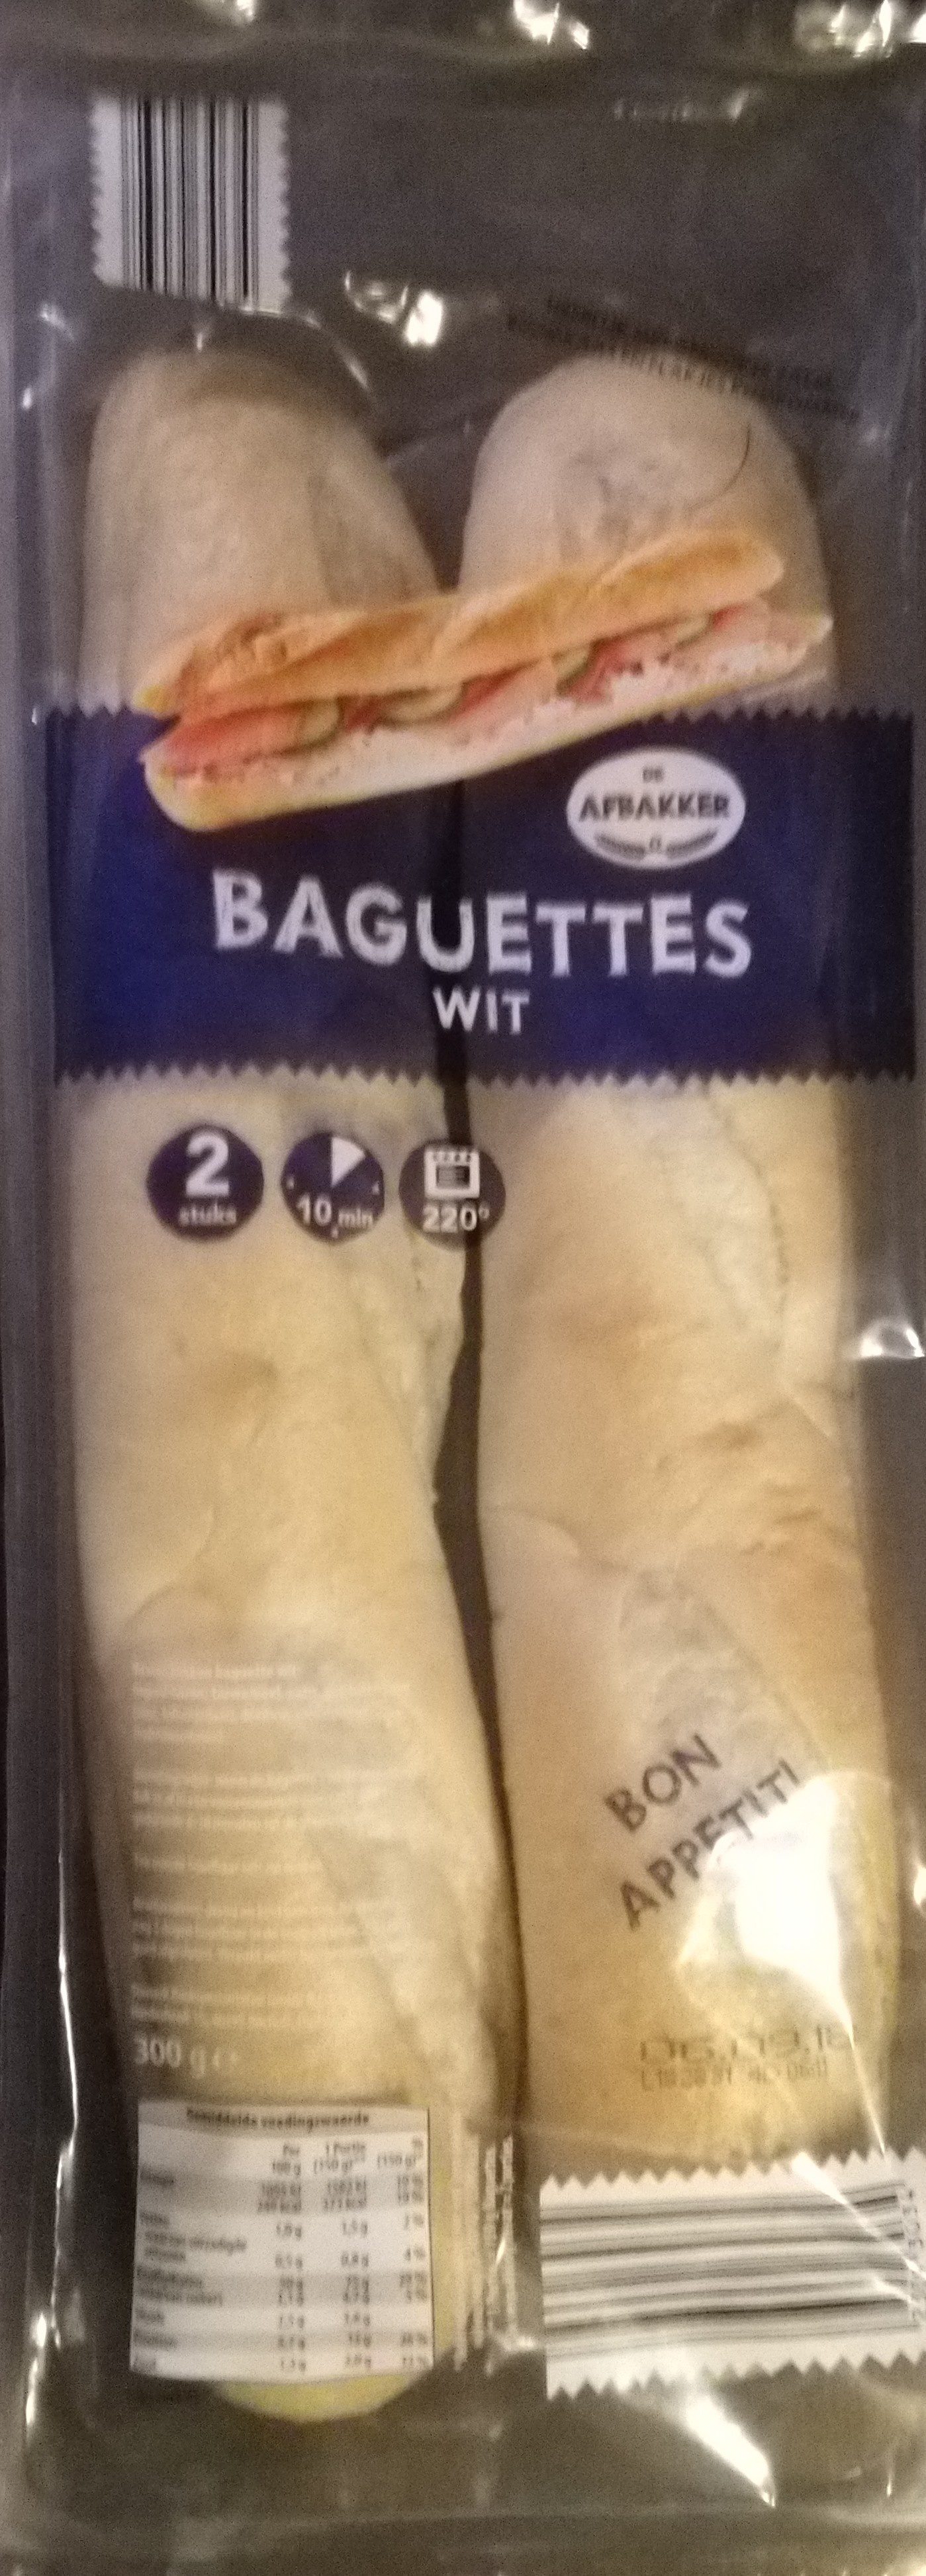 Baguettes Wit - Product